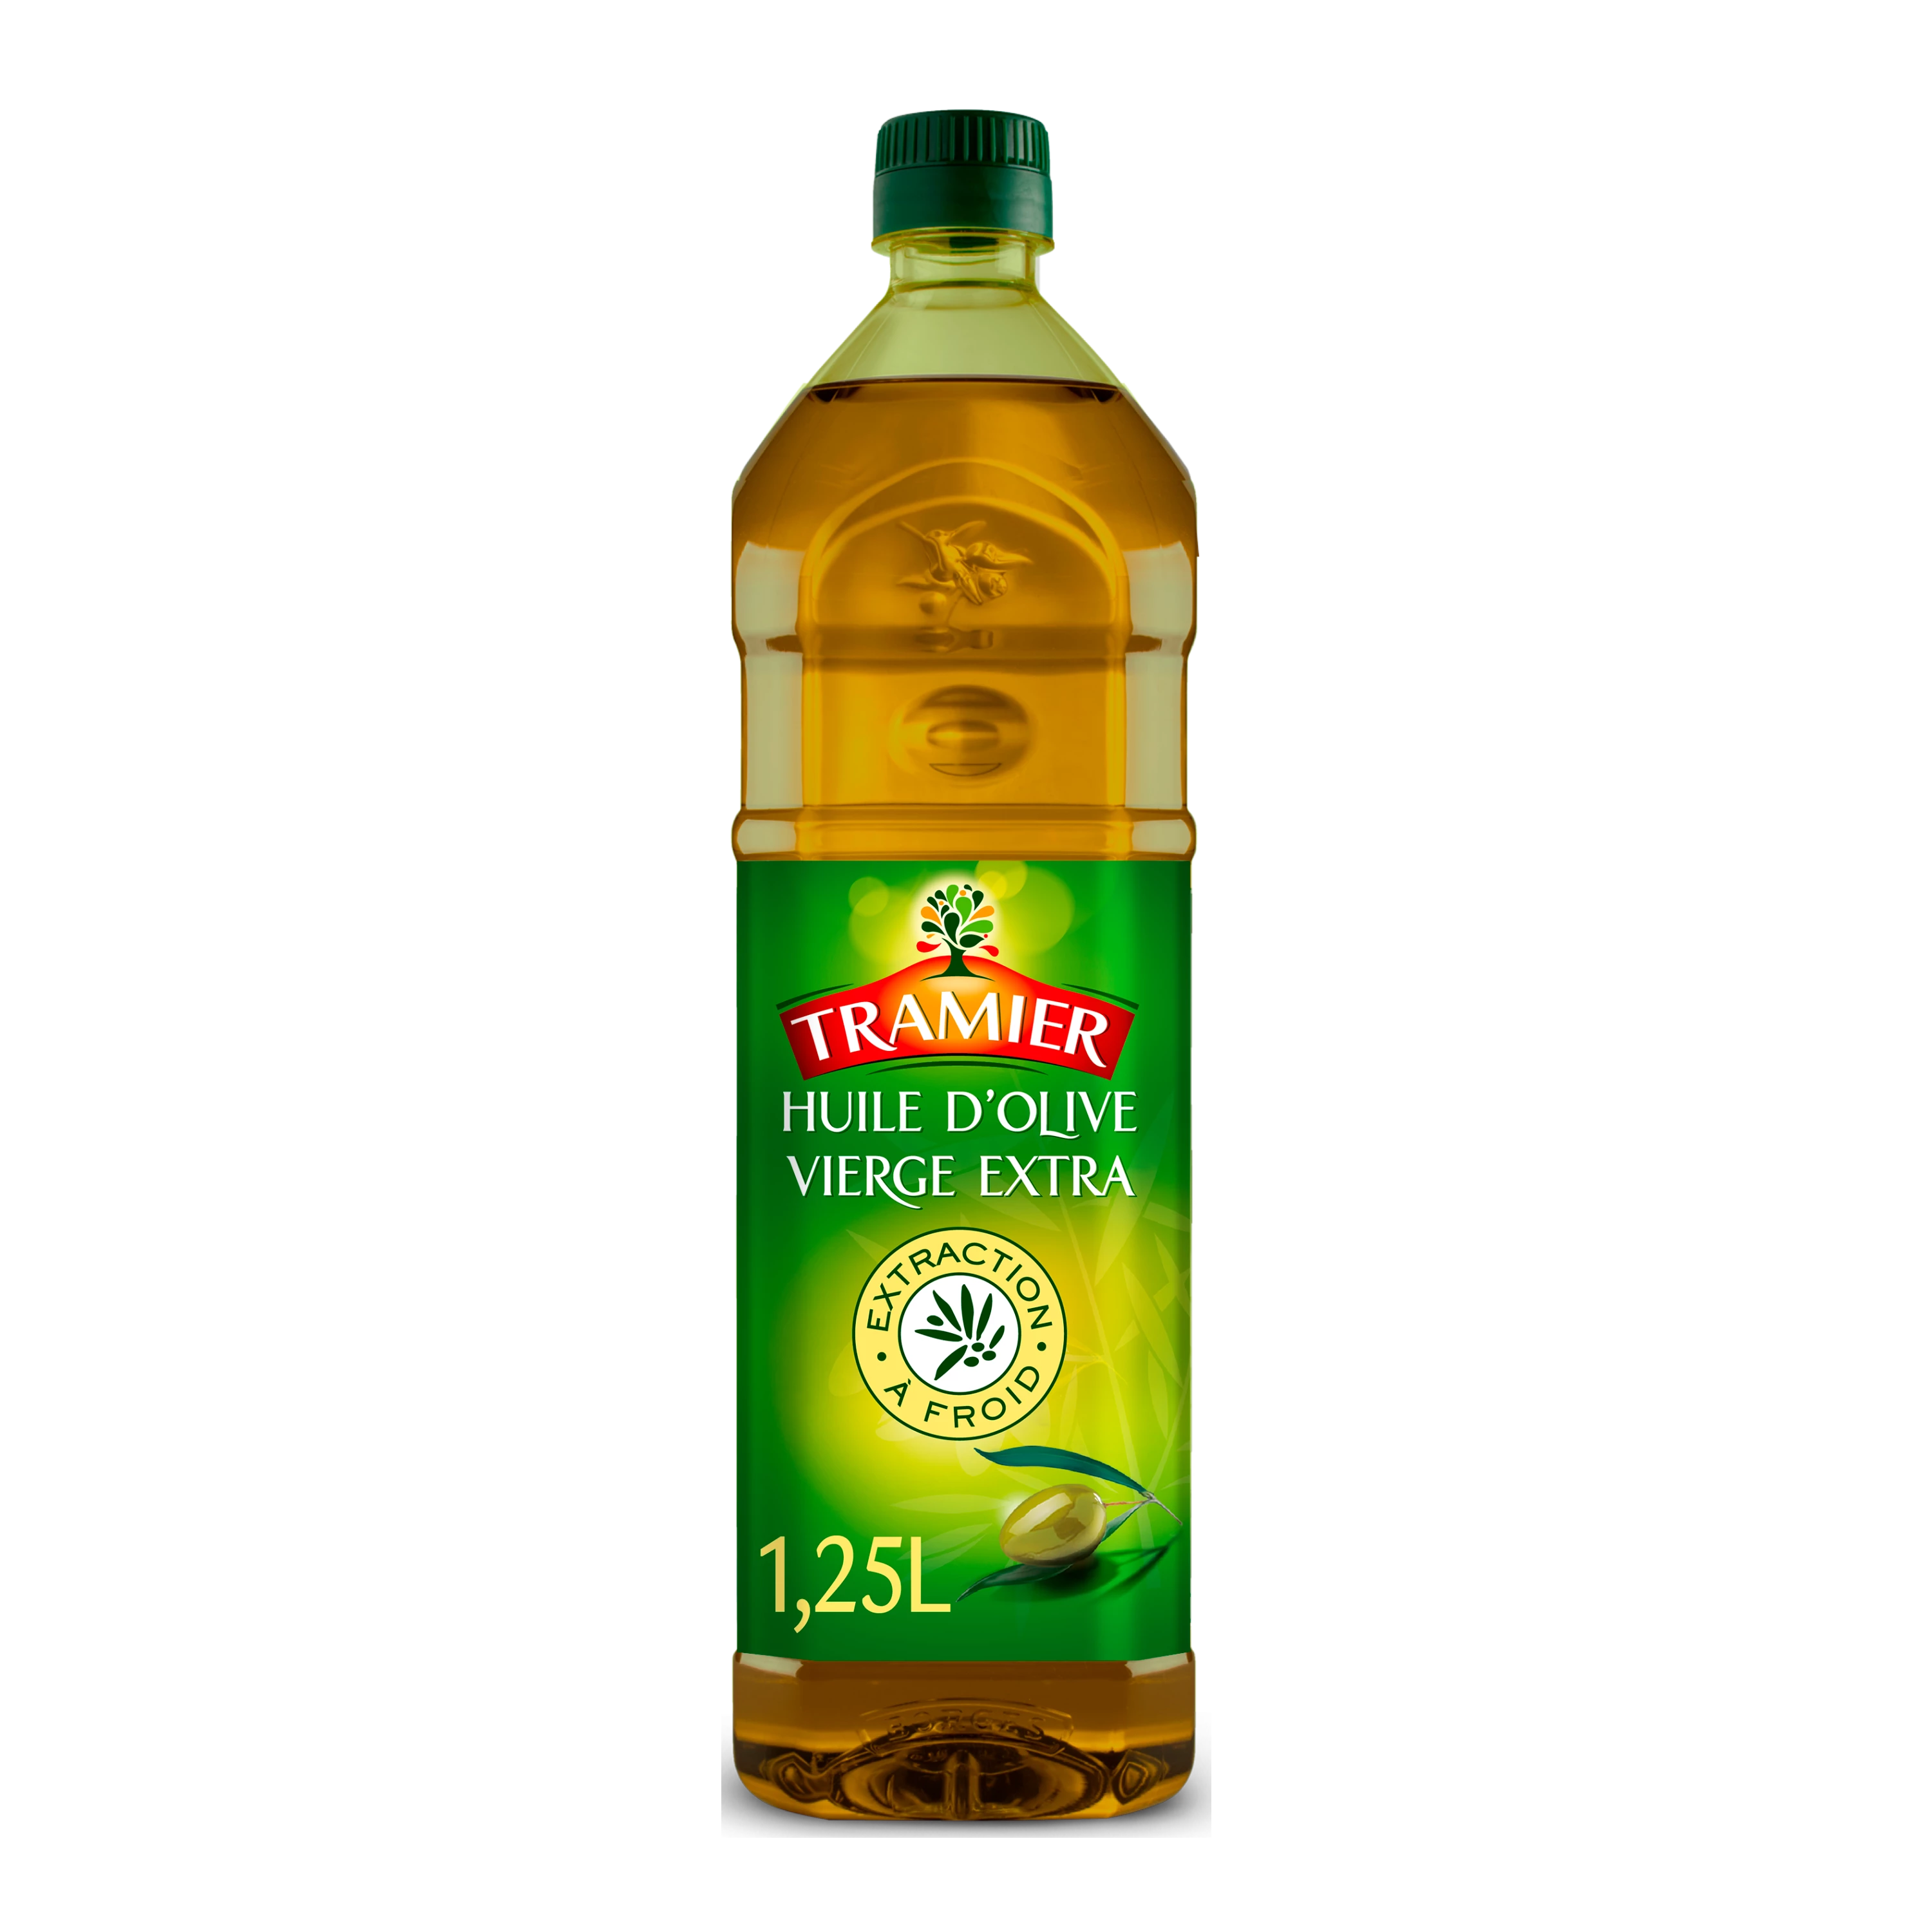 Extra Virgin Olive Oil 1.25l - TRAMIER